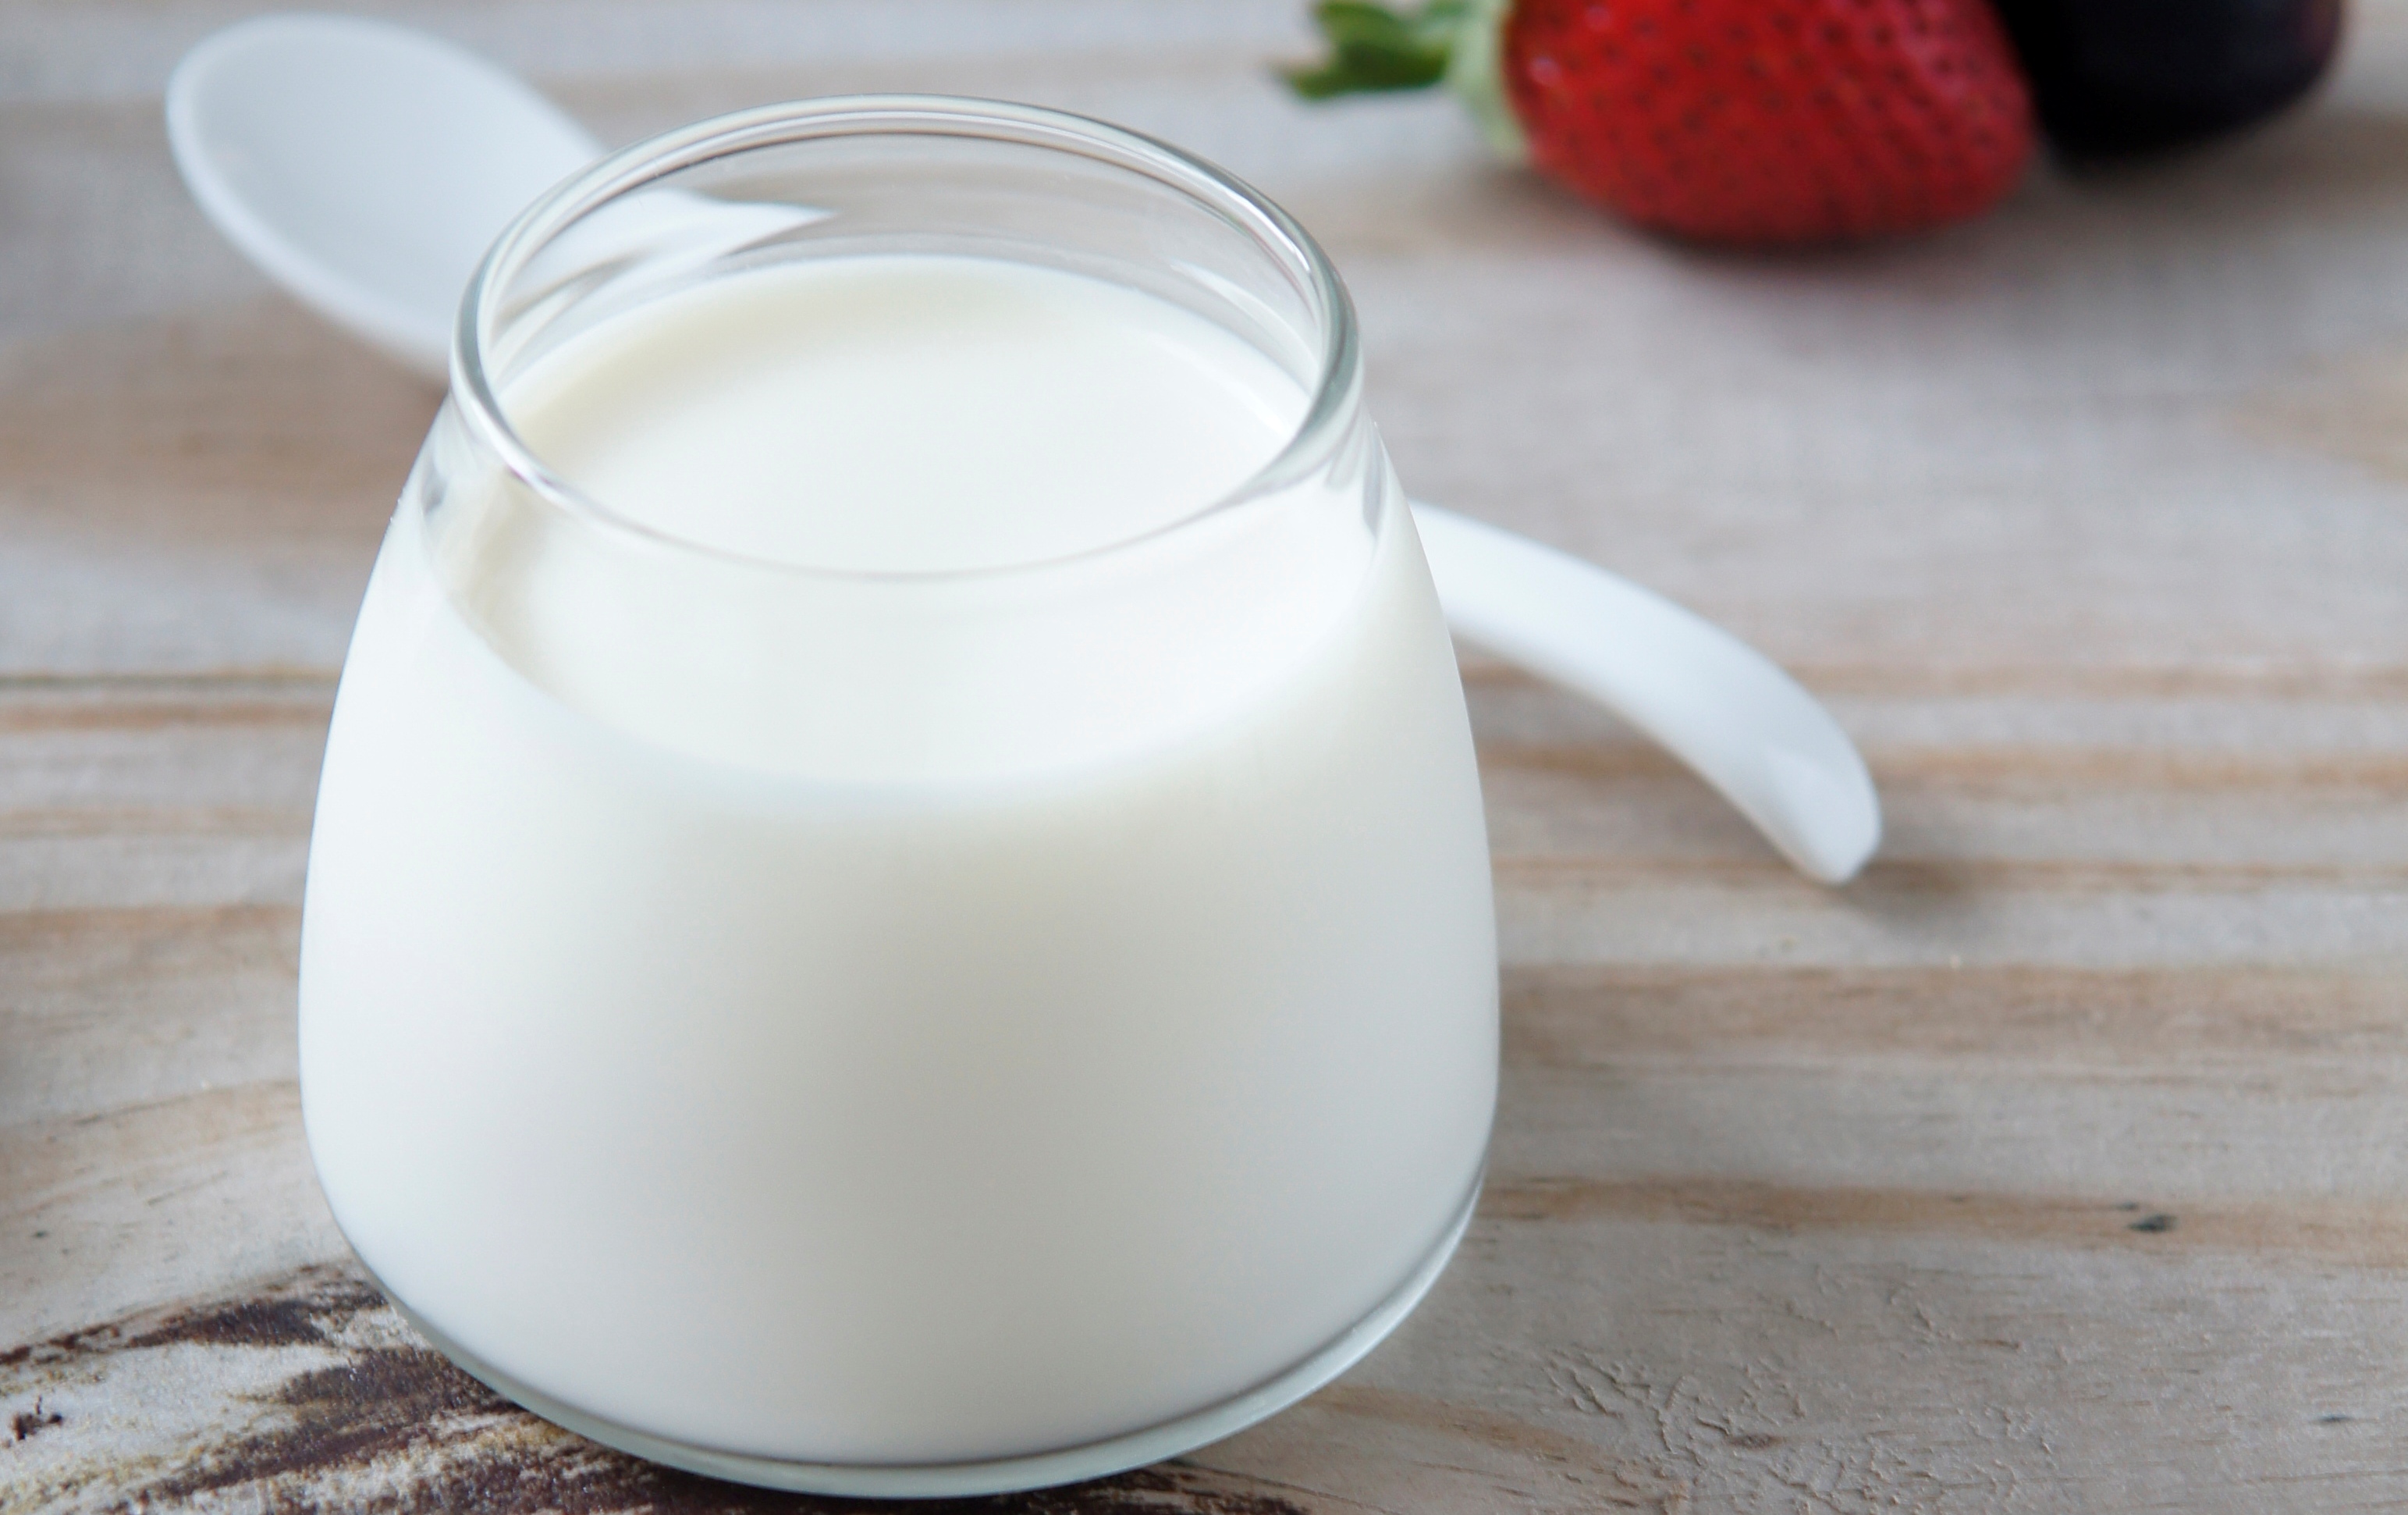 Một số trẻ dị ứng với lactose trong sữa nhưng không dị ứng với các sản phẩm từ sữa như sữa chua, phomai ...